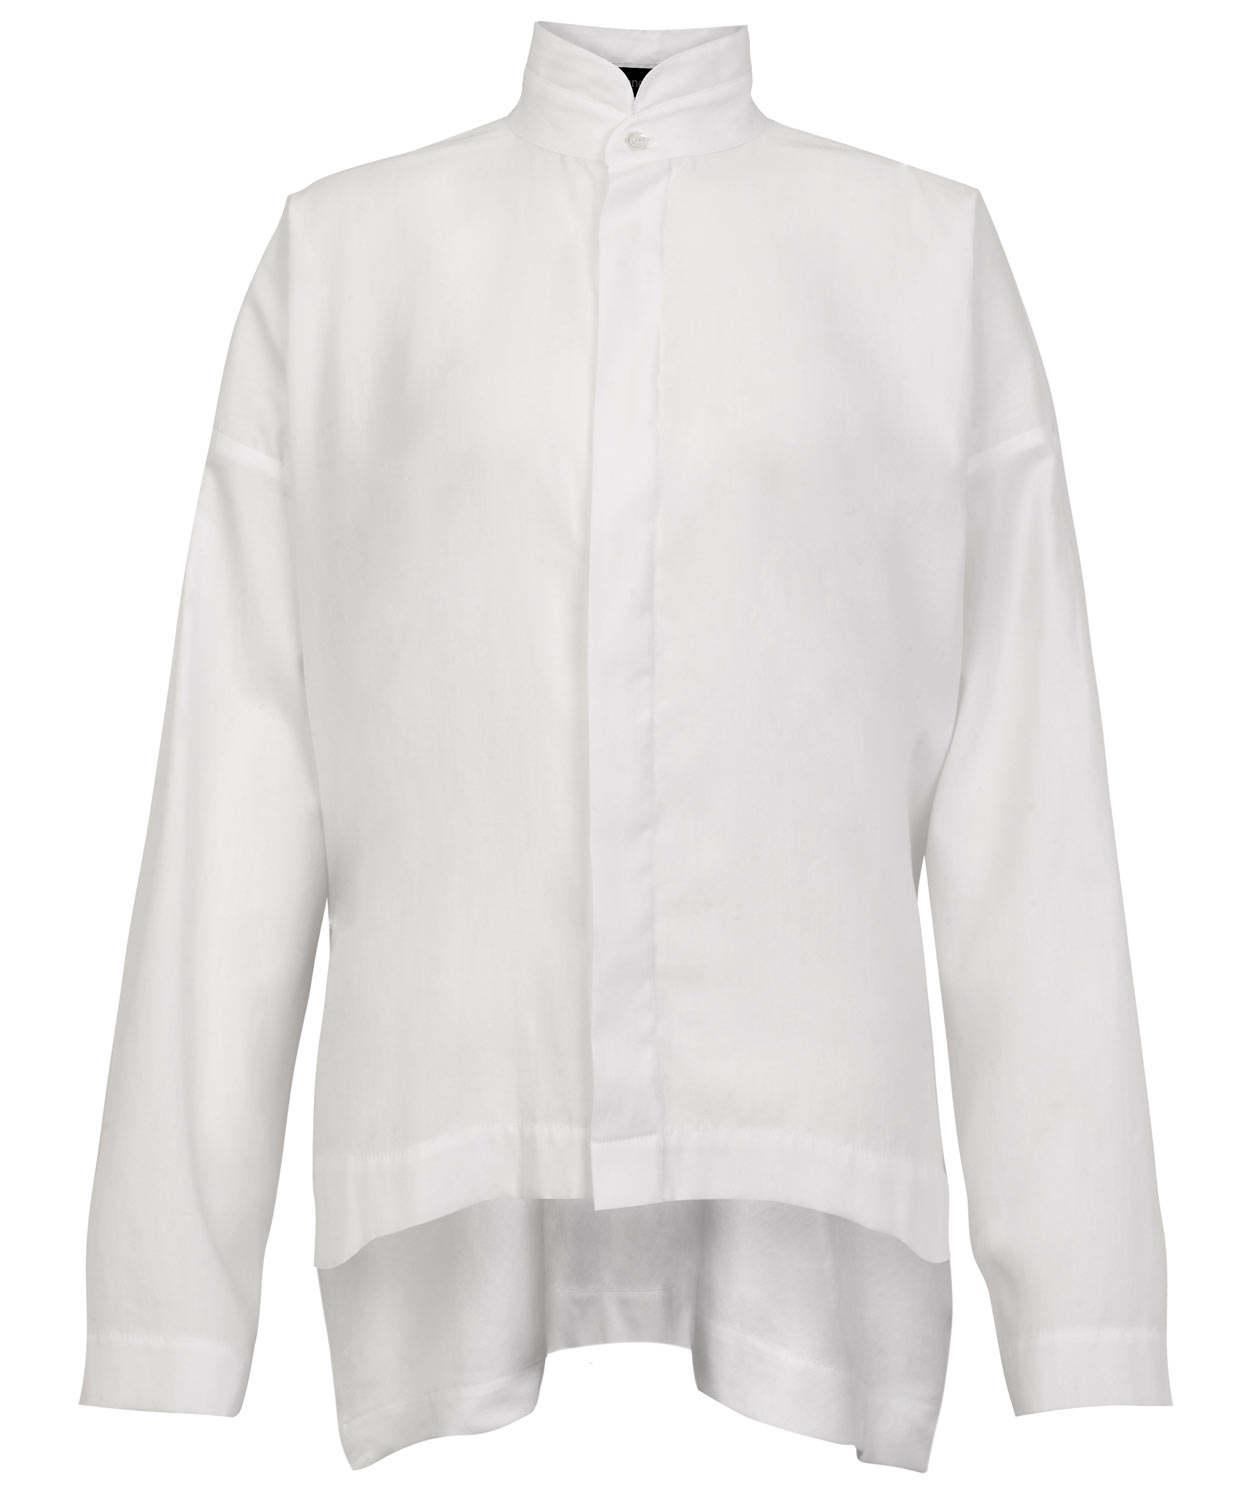 Lyst - Eskandar White Mandarin Collar Shirt in White